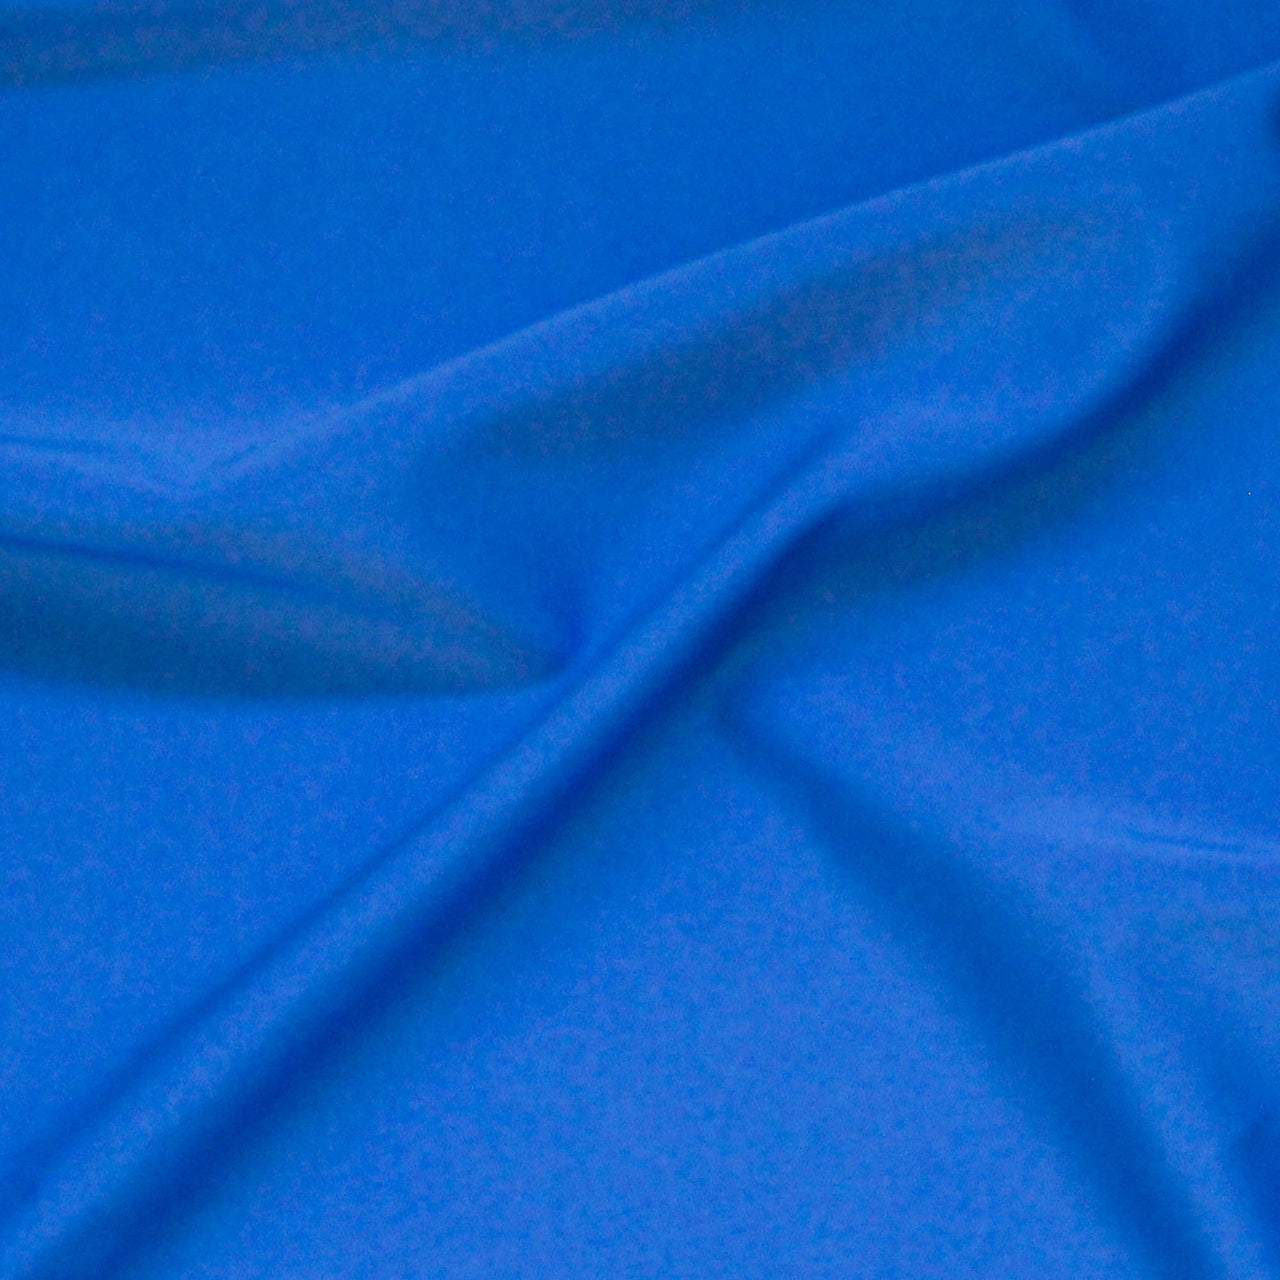 Royal Blue - Nylon Spandex Fabric - 4 Way All Way Stretch Superior Quality - Leotards, Dancewear